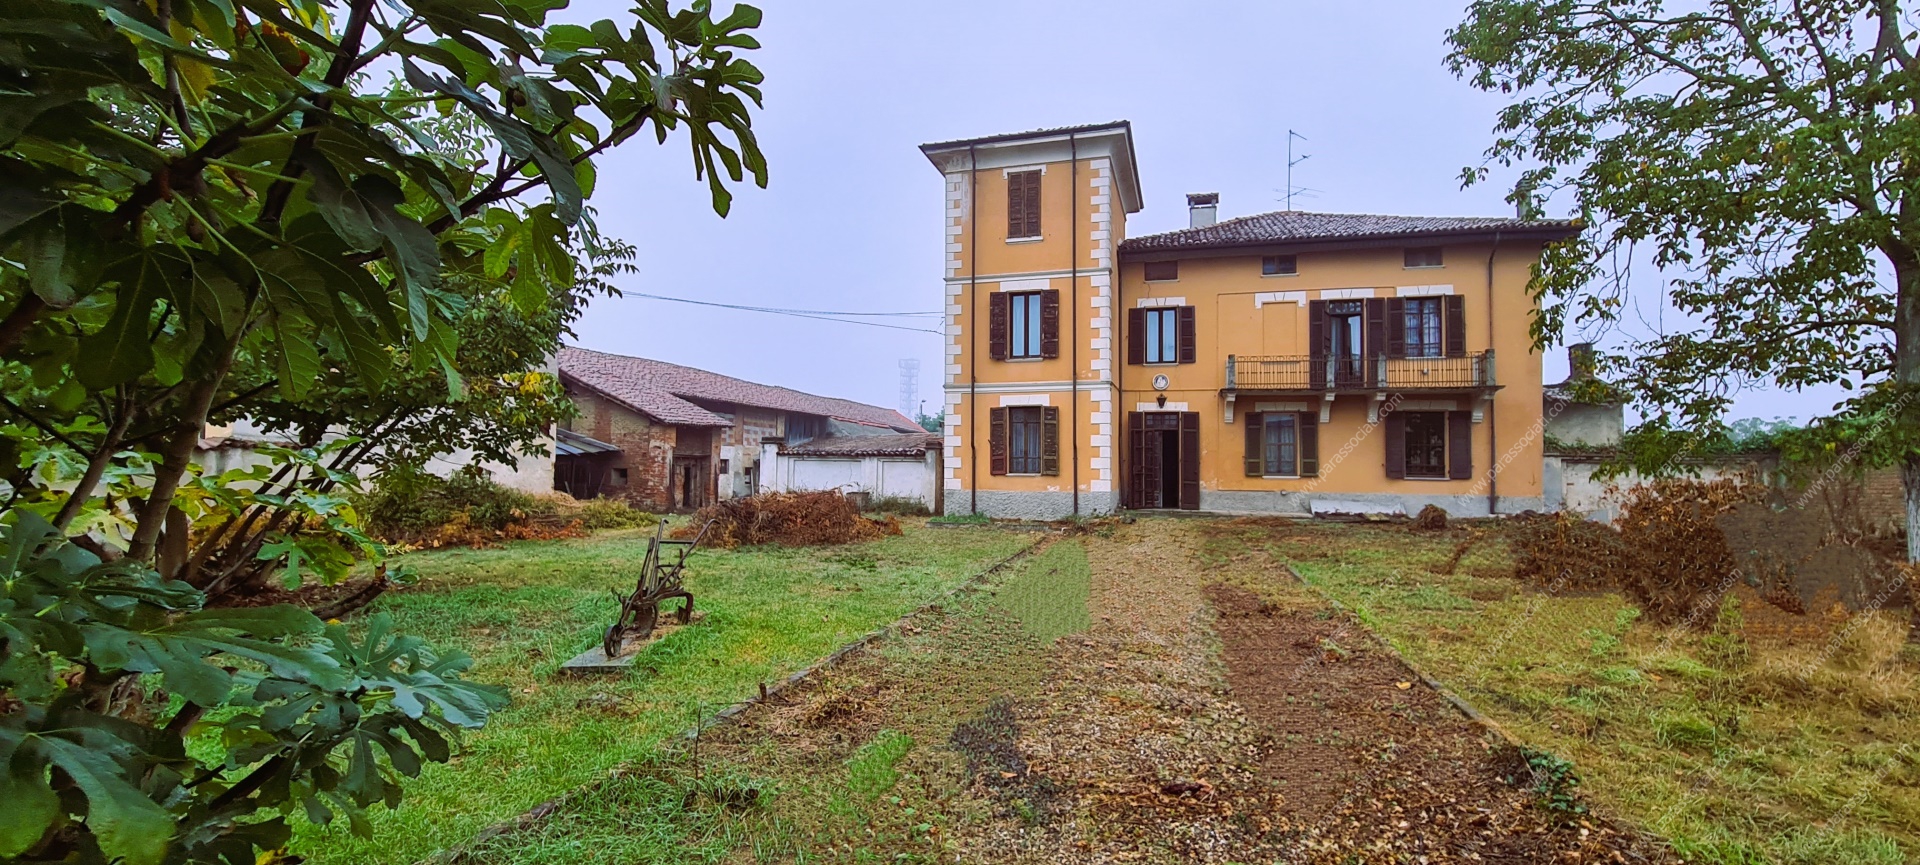 Villa in vendita a Gambarana